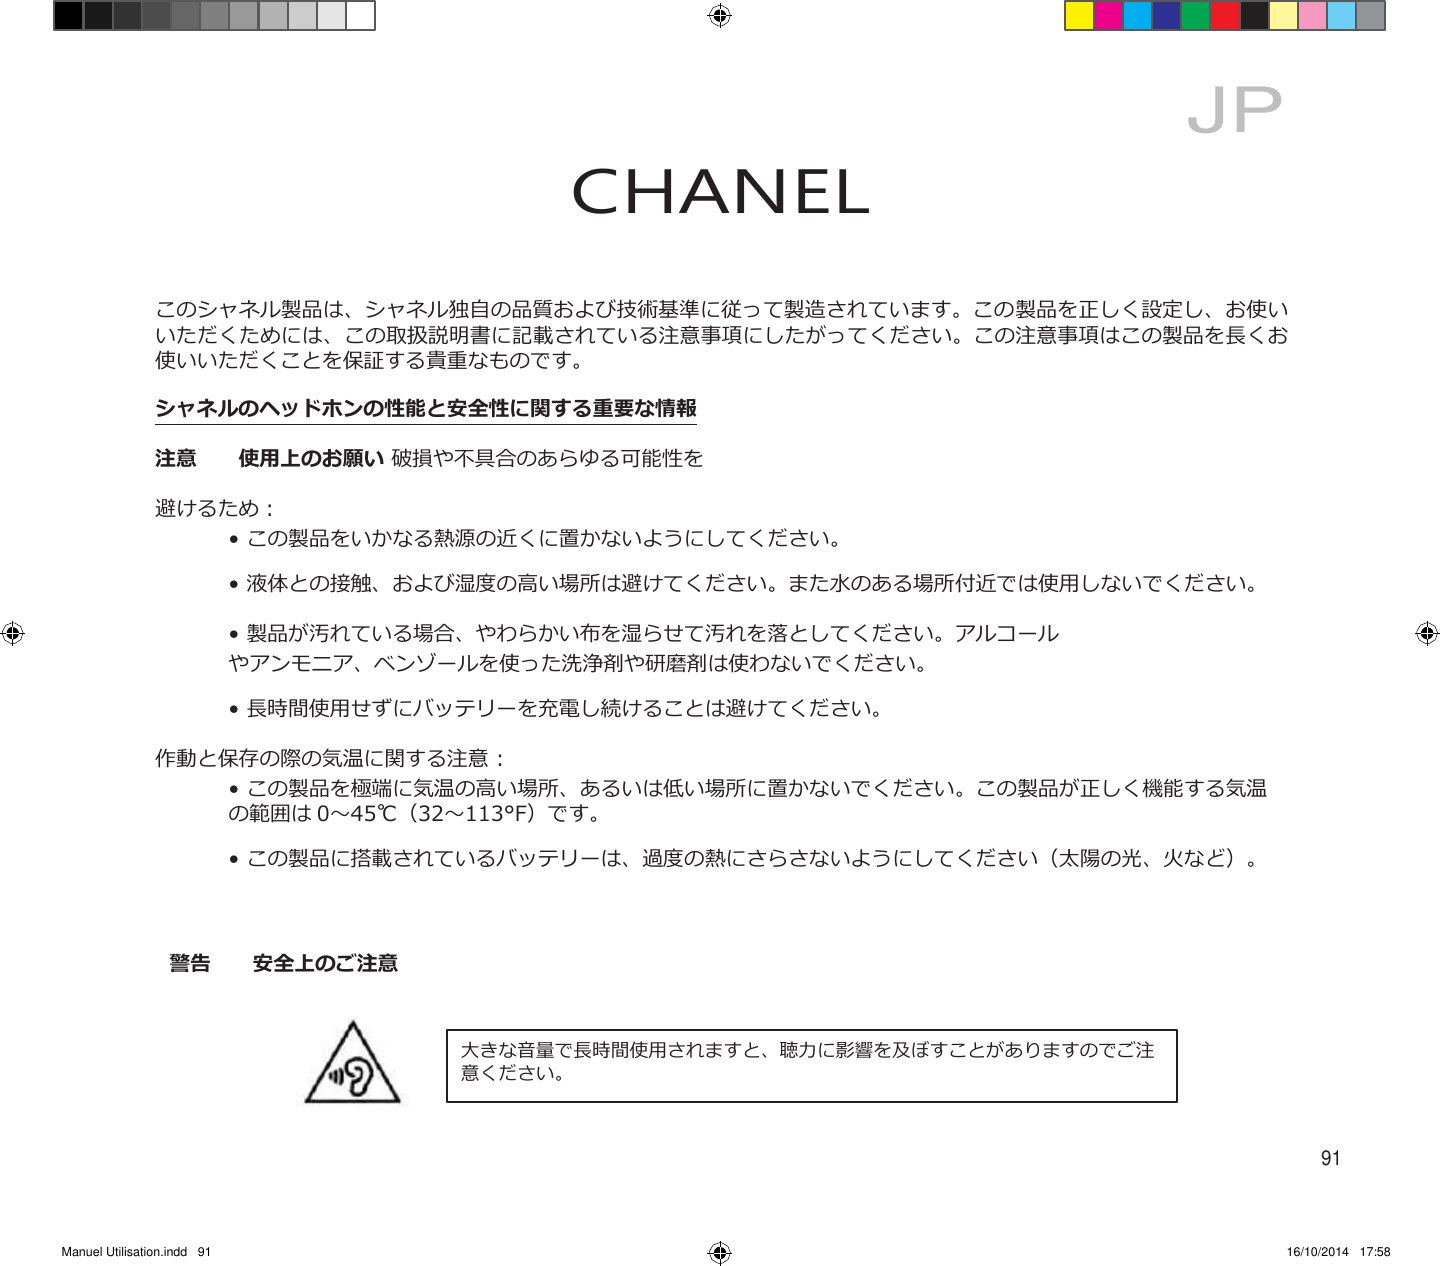 Manuel Utilisation.indd   91 16/10/2014   17:58     JP CHANEL    このシャネル製品は、シャネル独自の品質および技術基準に従って製造されています。この製品を正しく設定し、お使い いただくためには、この取扱説明書に記載されている注意事項にしたがってください。この注意事項はこの製品を長くお 使いいただくことを保証する貴重なものです。 シャネルのヘッドホンの性能と安全性に関する重要な情報 注意  使用上のお願い 破損や不具合のあらゆる可能性を避けるため：    • この製品をいかなる熱源の近くに置かないようにしてください。    • 液体との接触、および湿度の高い場所は避けてください。また水のある場所付近では使用しないでください。    • 製品が汚れている場合、やわらかい布を湿らせて汚れを落としてください。アルコール    やアンモニア、ベンゾールを使った洗浄剤や研磨剤は使わないでください。    • 長時間使用せずにバッテリーを充電し続けることは避けてください。 作動と保存の際の気温に関する注意 :     • この製品を極端に気温の高い場所、あるいは低い場所に置かないでください。この製品が正しく機能する気温       の範囲は 0～45℃（32～113°F）です。    • この製品に搭載されているバッテリーは、過度の熱にさらさないようにしてください（太陽の光、火など）。    警告  安全上のご注意    大きな音量で長時間使用されますと、聴力に影響を及ぼすことがありますのでご注 意ください。    91 